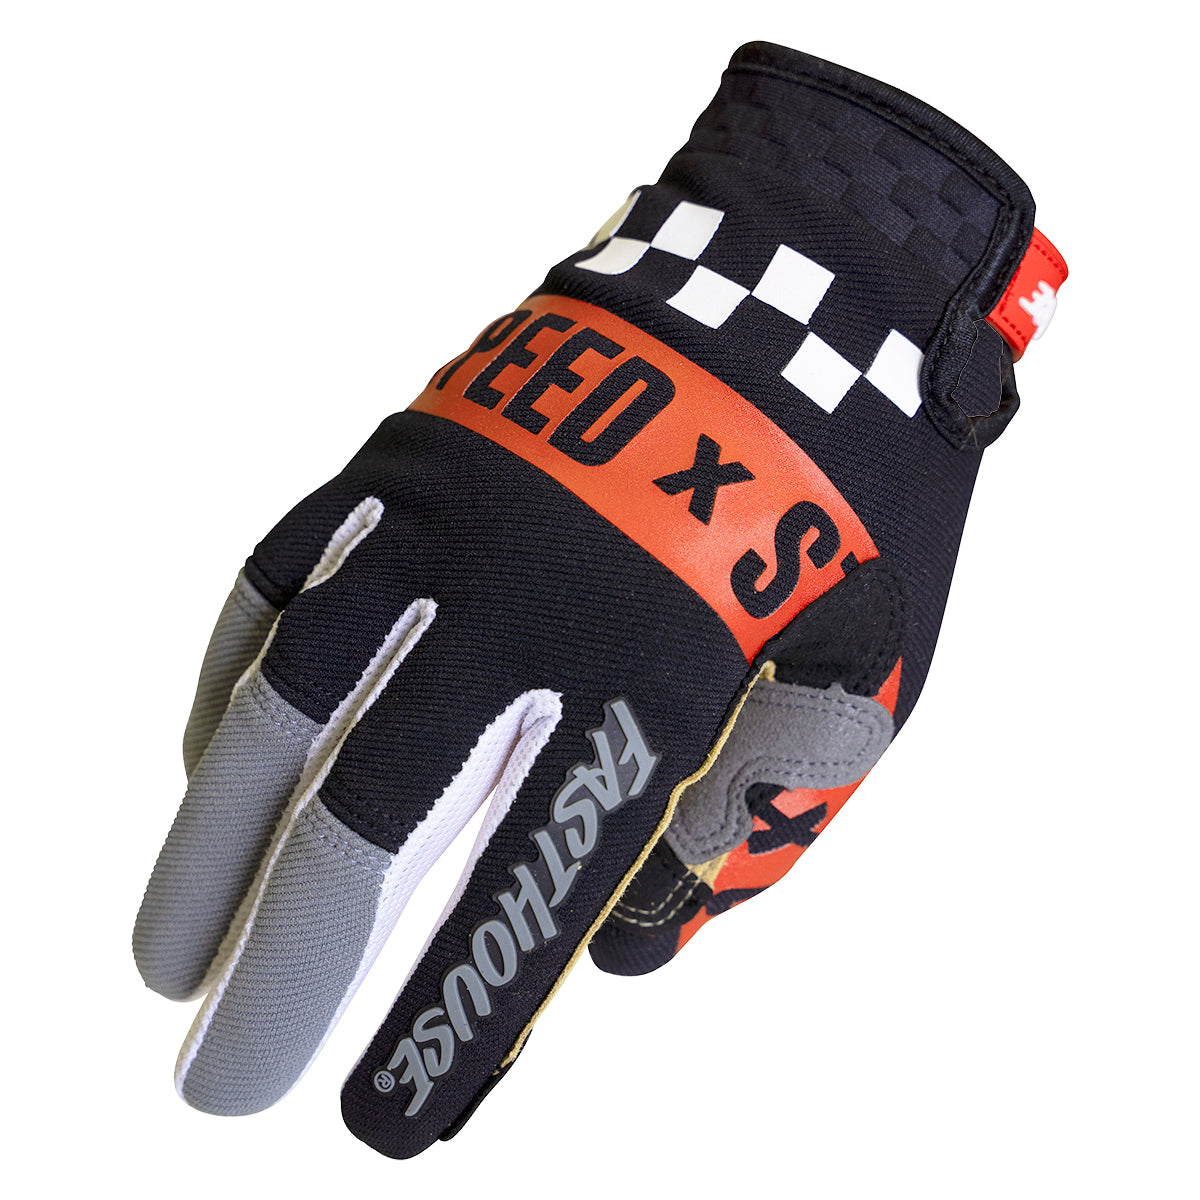 Speed Style Domingo Glove - Gray/Black